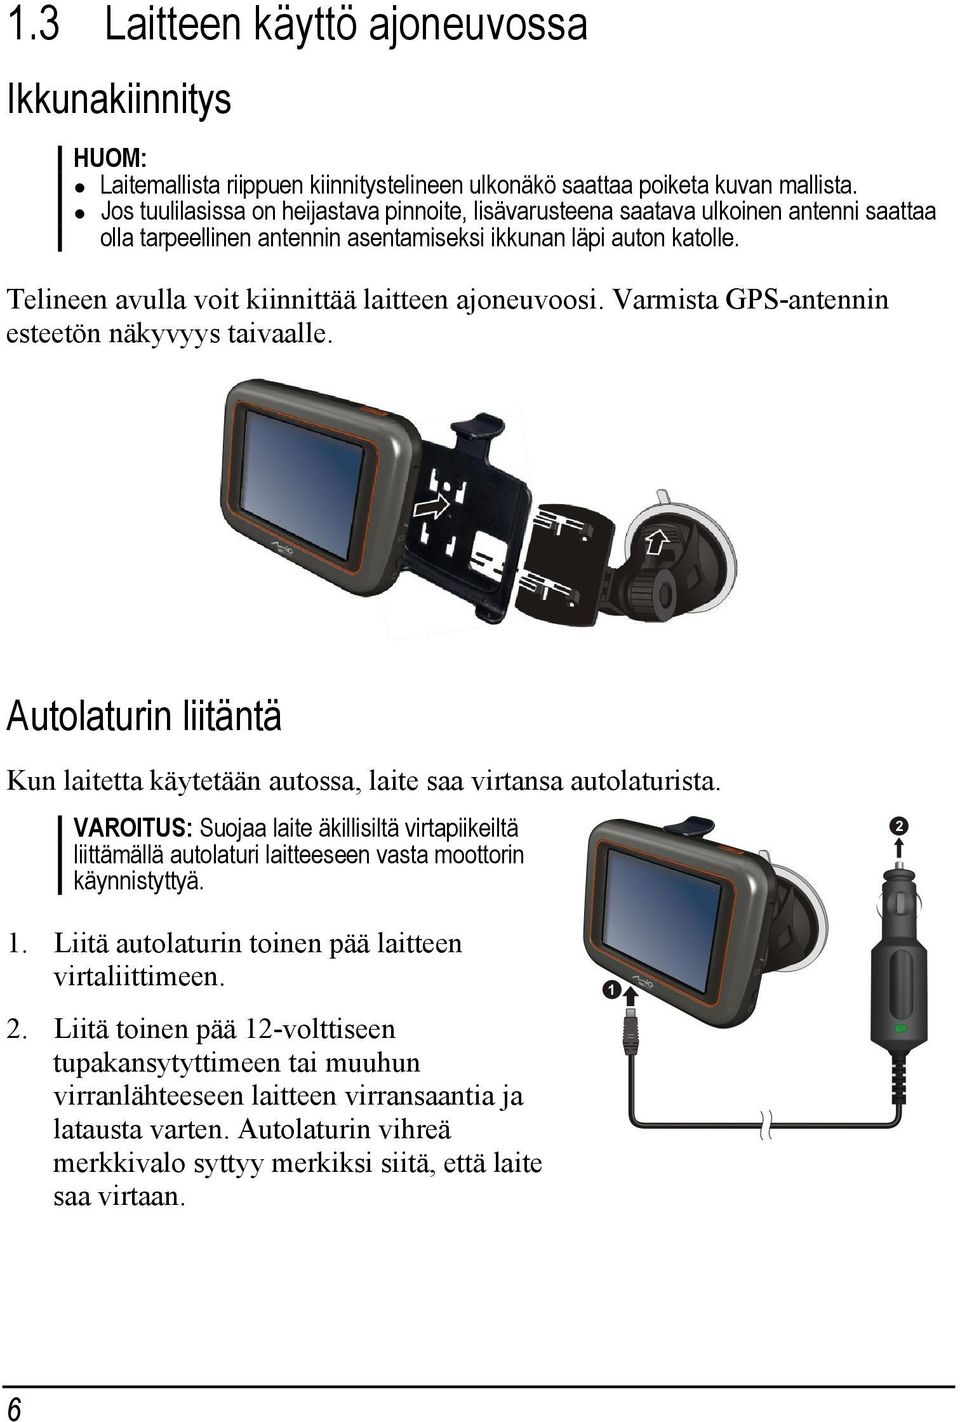 Telineen avulla voit kiinnittää laitteen ajoneuvoosi. Varmista GPS-antennin esteetön näkyvyys taivaalle. Autolaturin liitäntä Kun laitetta käytetään autossa, laite saa virtansa autolaturista.